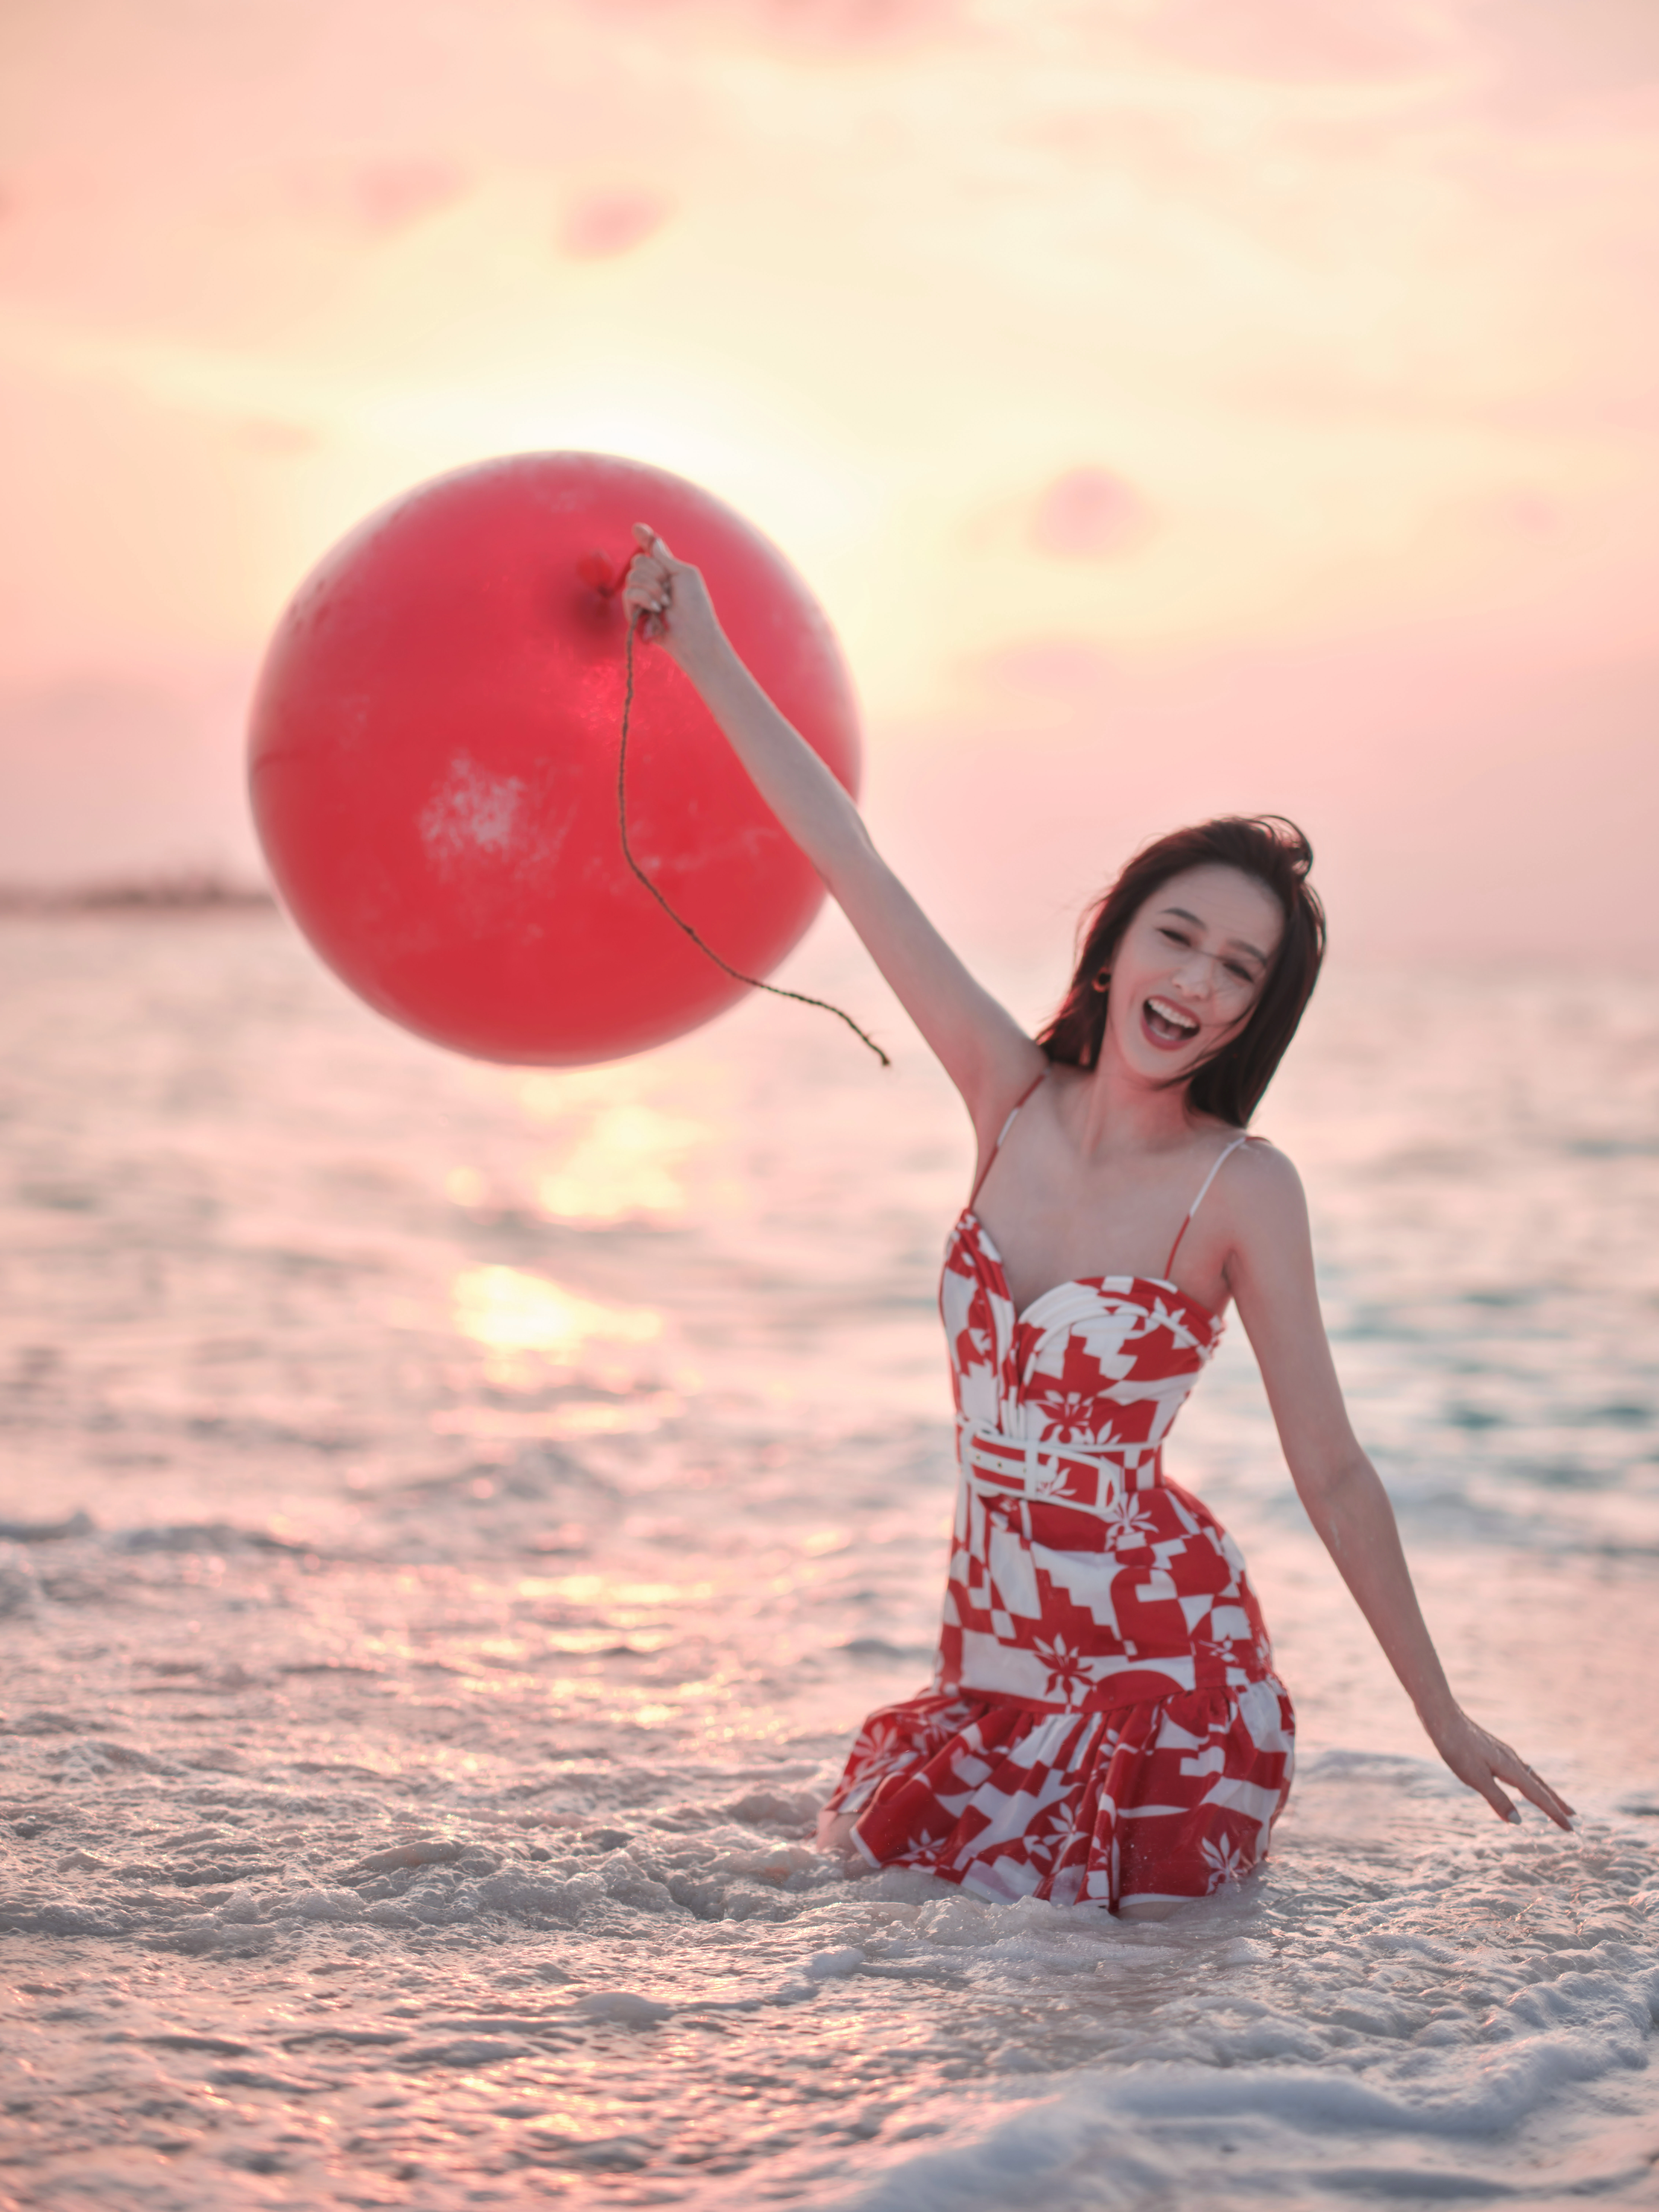 佟丽娅新春海边写真 红色吊带连衣裙笑容甜美,1 (6)